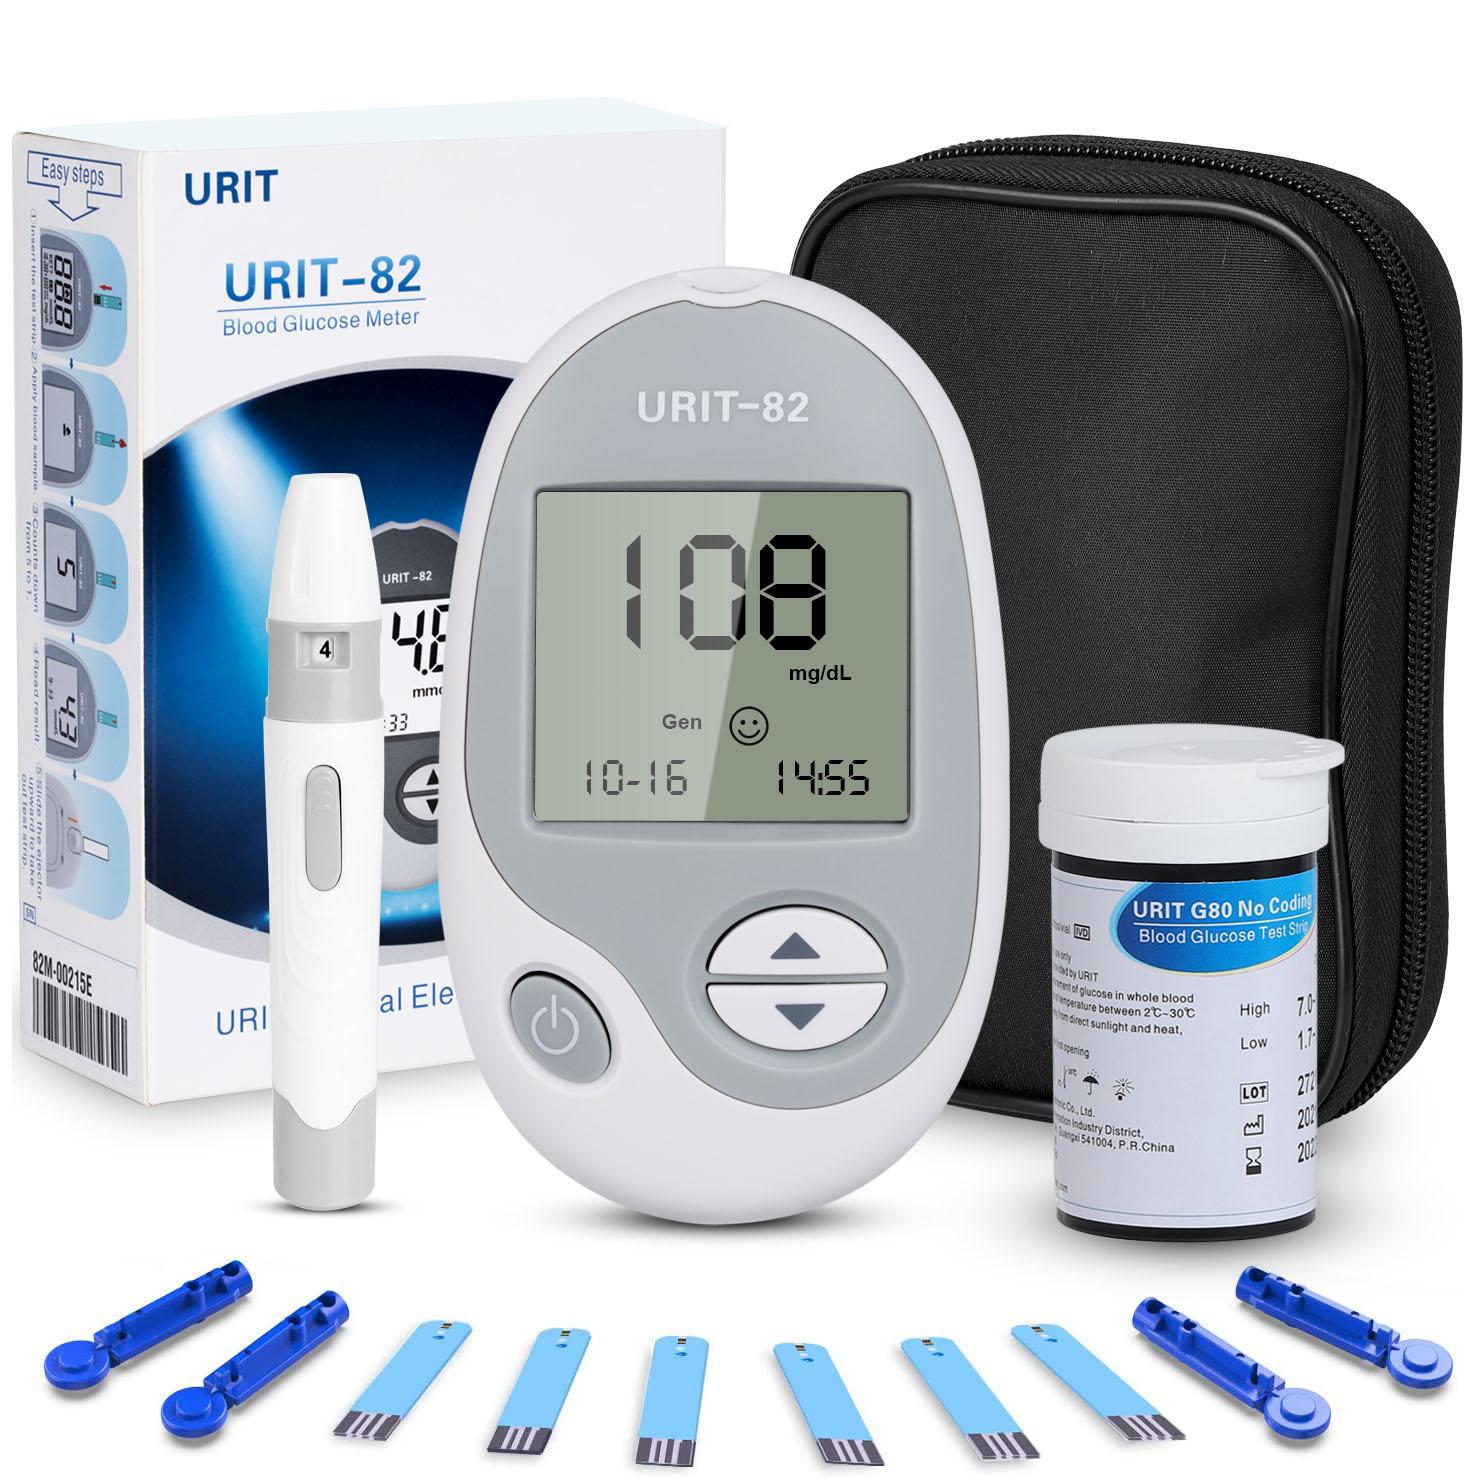 Vinsic Blood Glucose Meter, Blood Sugar Monitor Kit, Diabetes Testing Kit, High-Tech Diabetes Blood Glucose Meter with 50 Test Strips, Lancing Device, No Coding